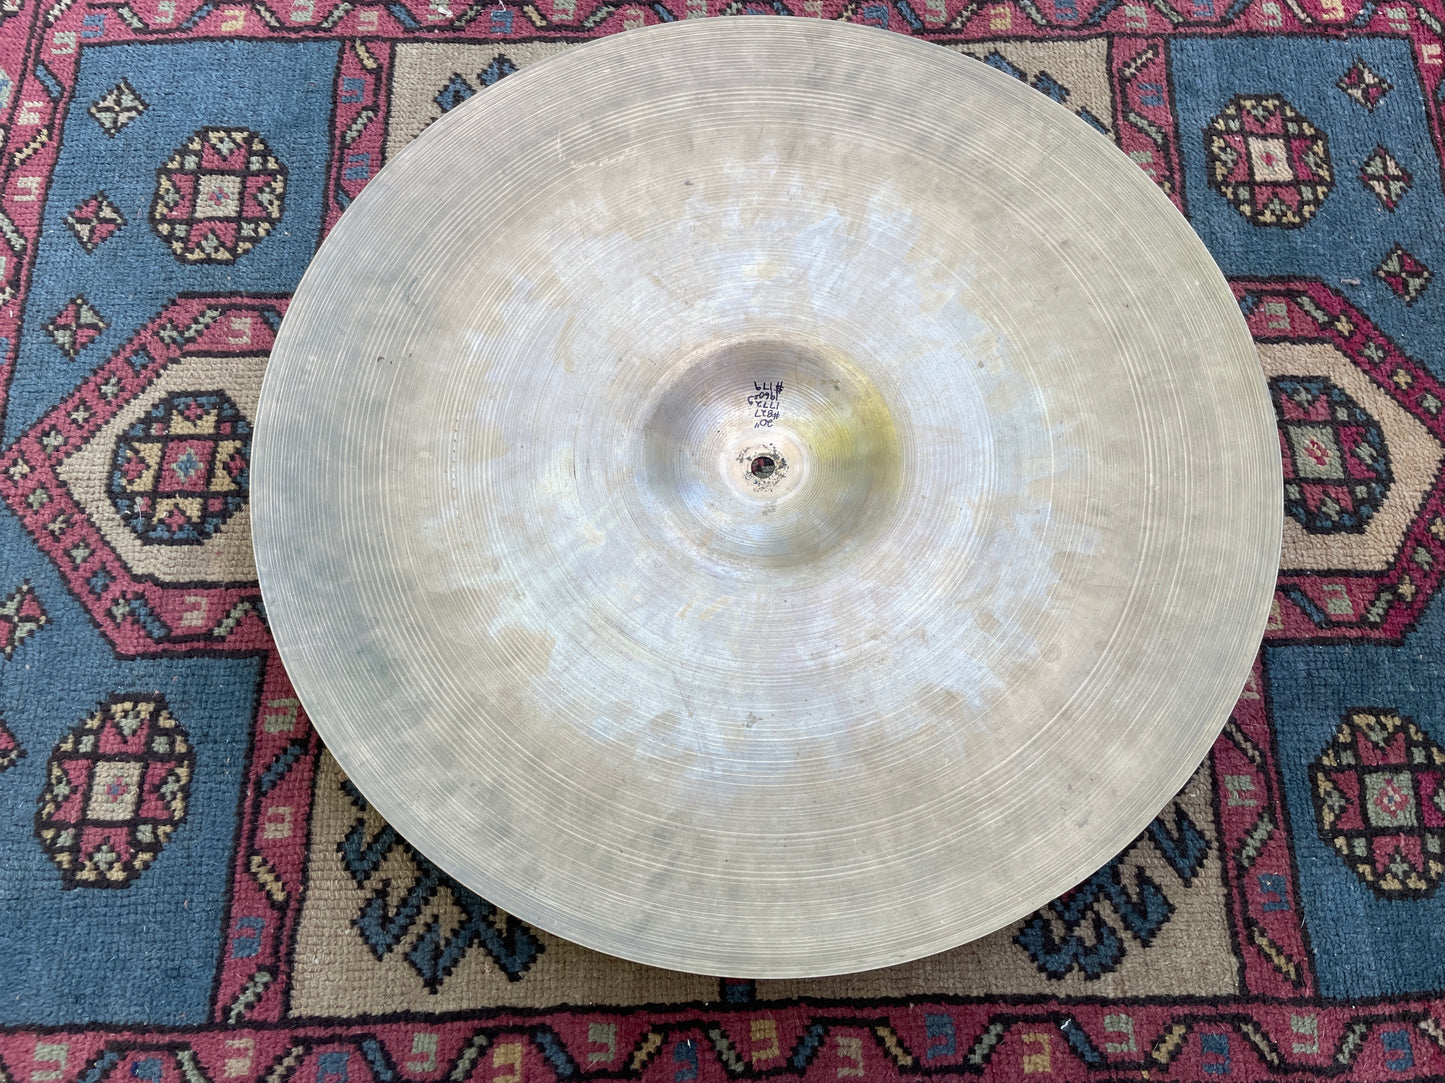 20" Zildjian A 1960s Ride Cymbal 1772g #827